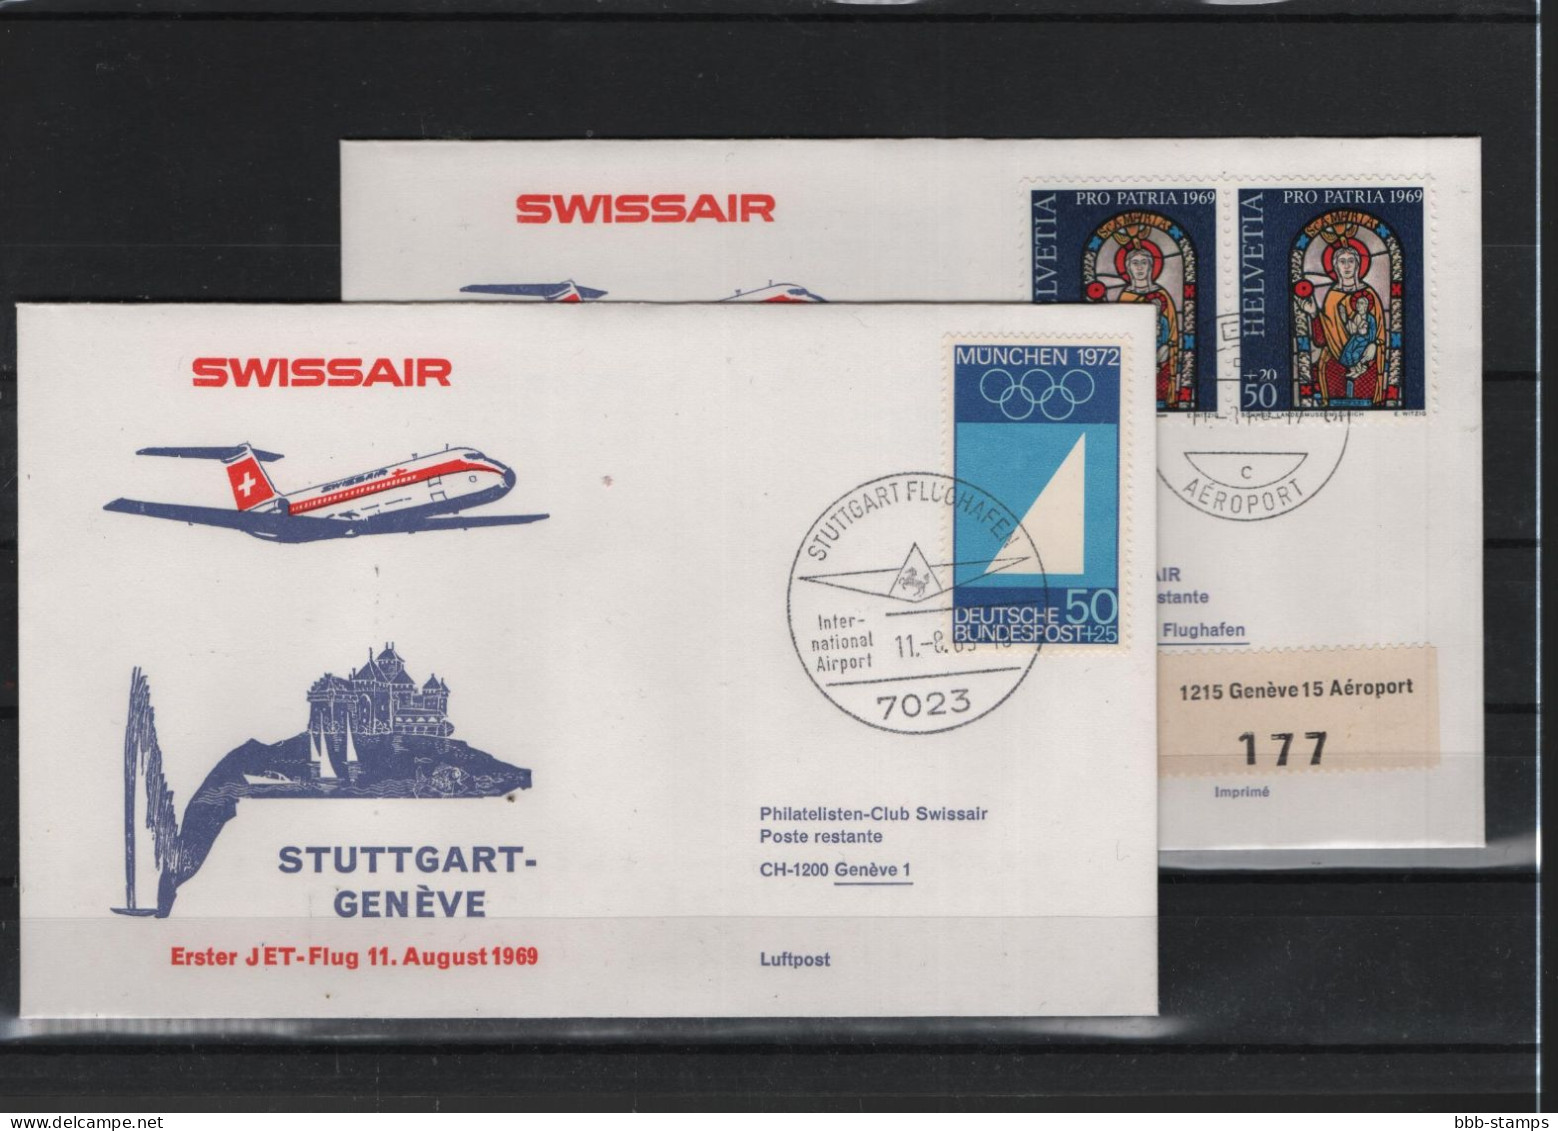 Schweiz Air Mail Swissair  FFC  11.8.1969 Genf - Stuttgart VV - First Flight Covers